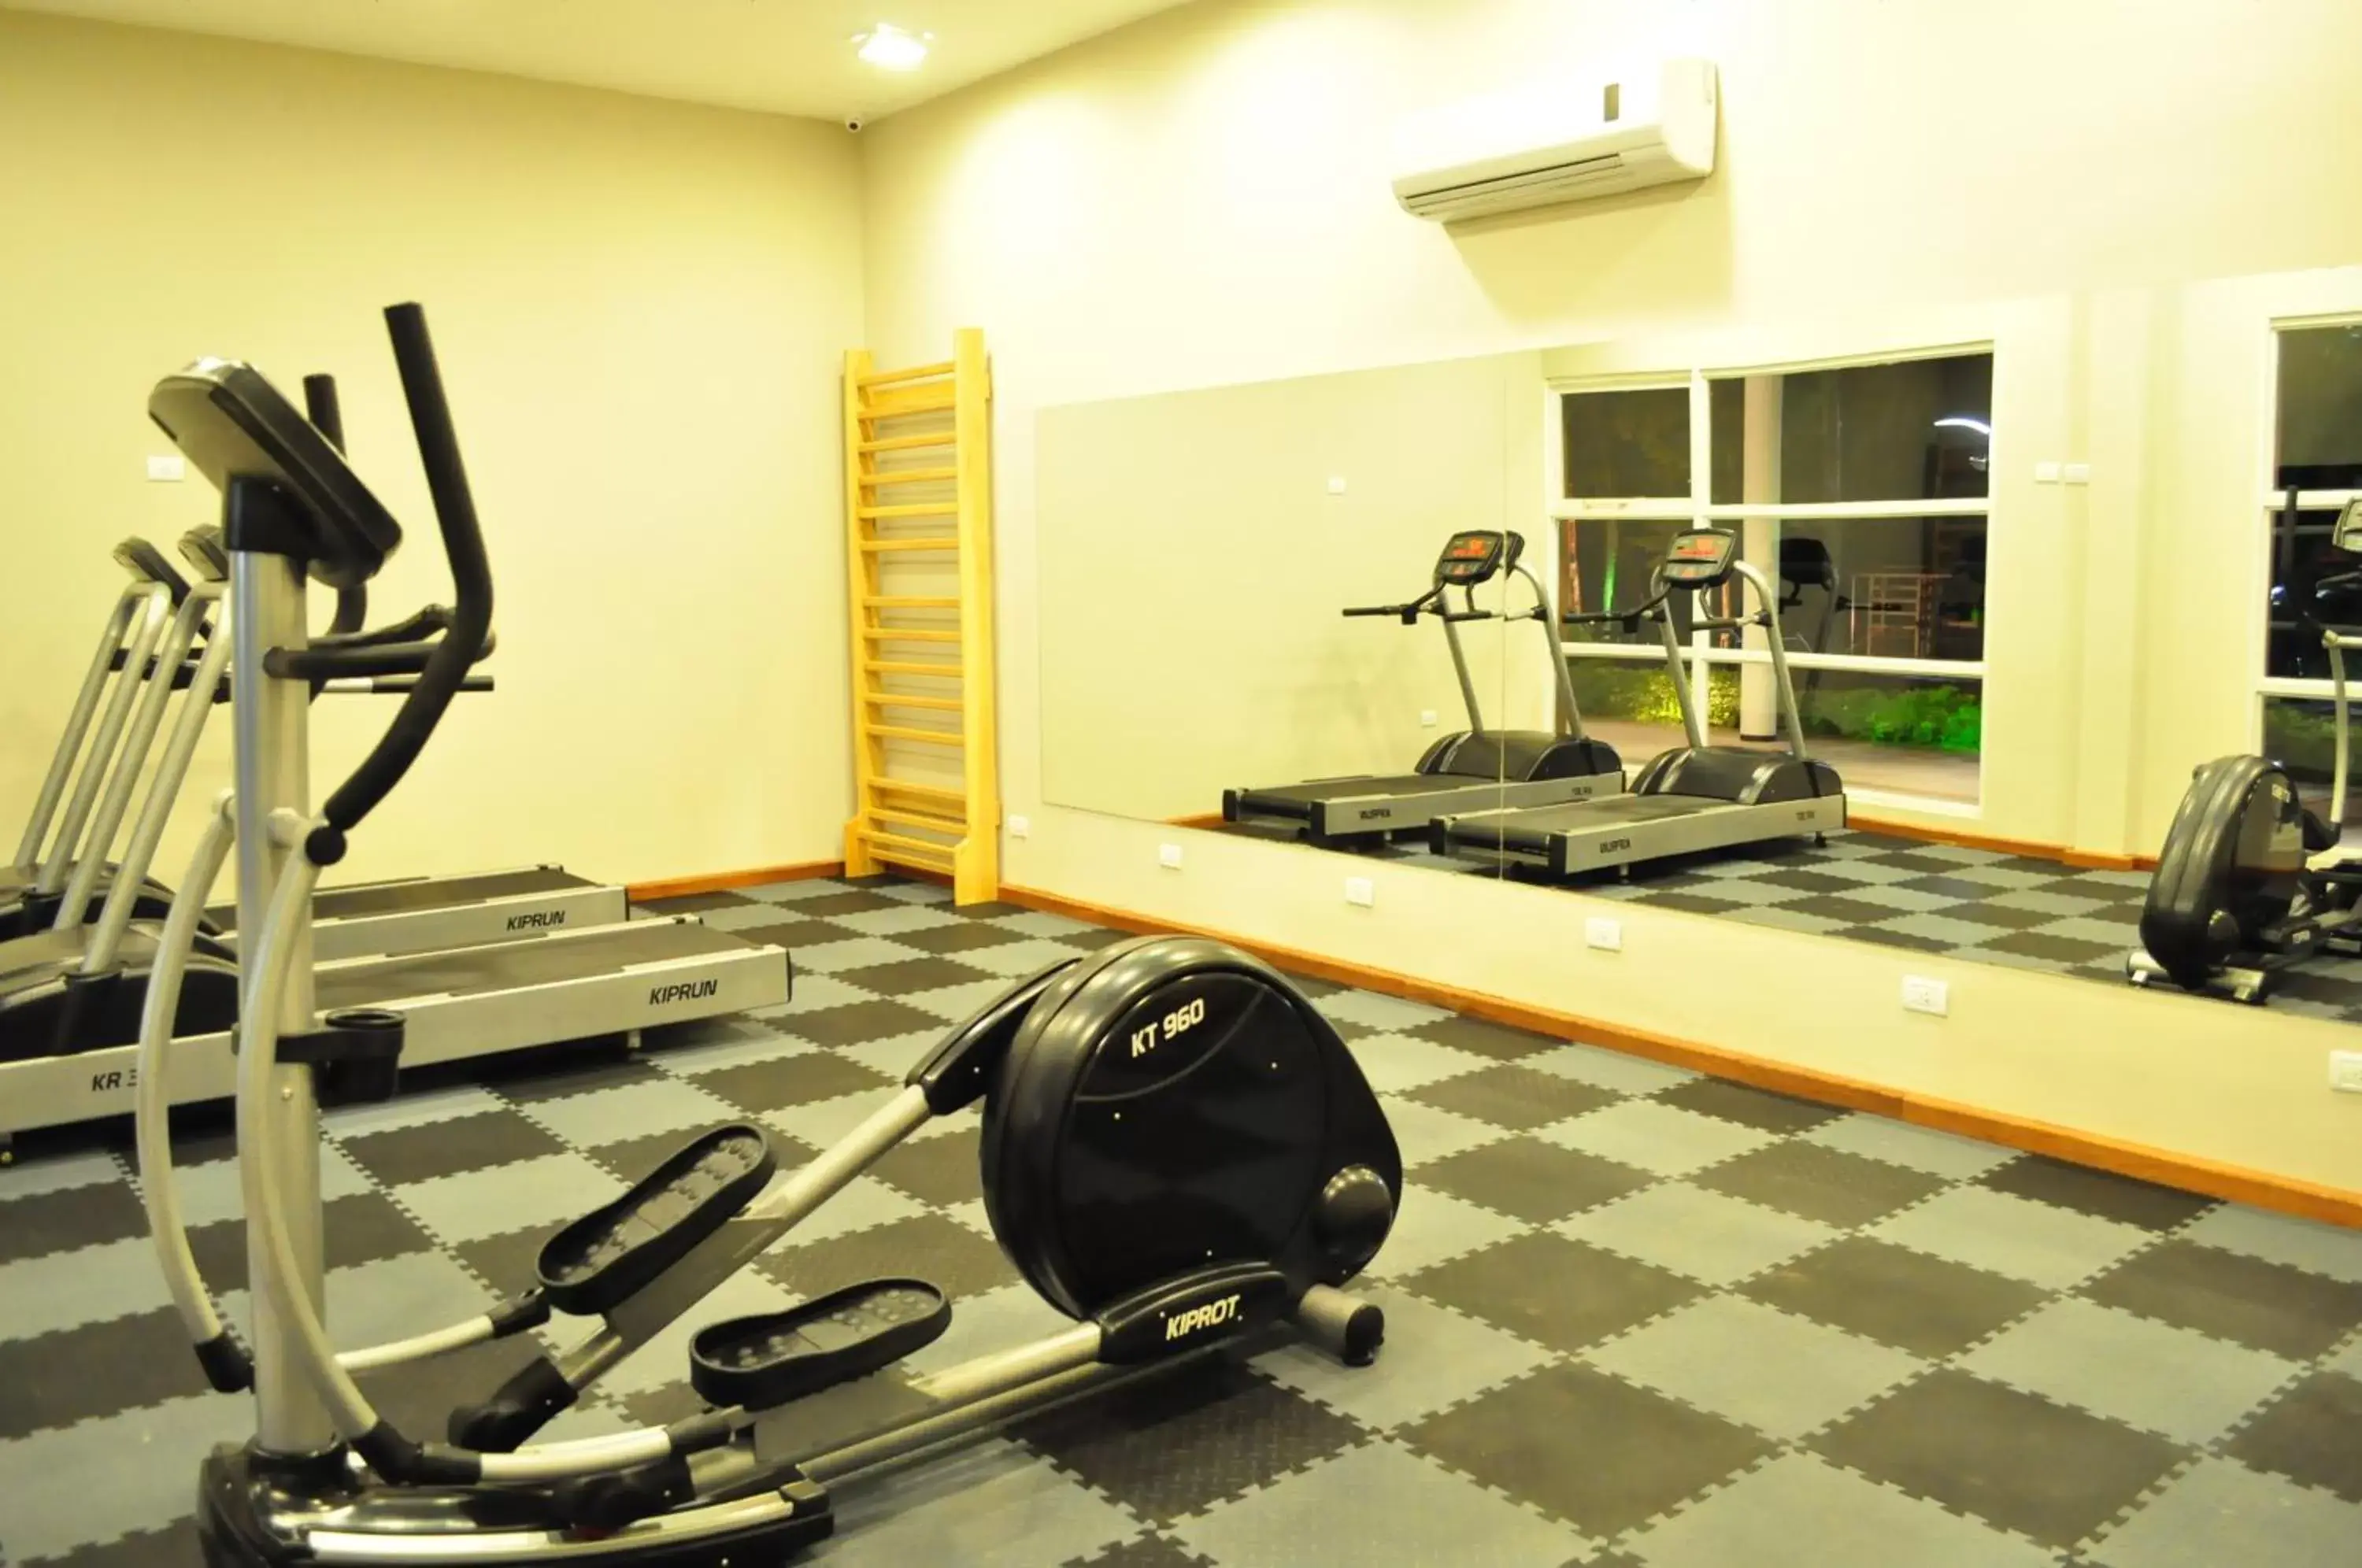 Fitness centre/facilities, Fitness Center/Facilities in Gran Hotel Tourbillon & Lodge